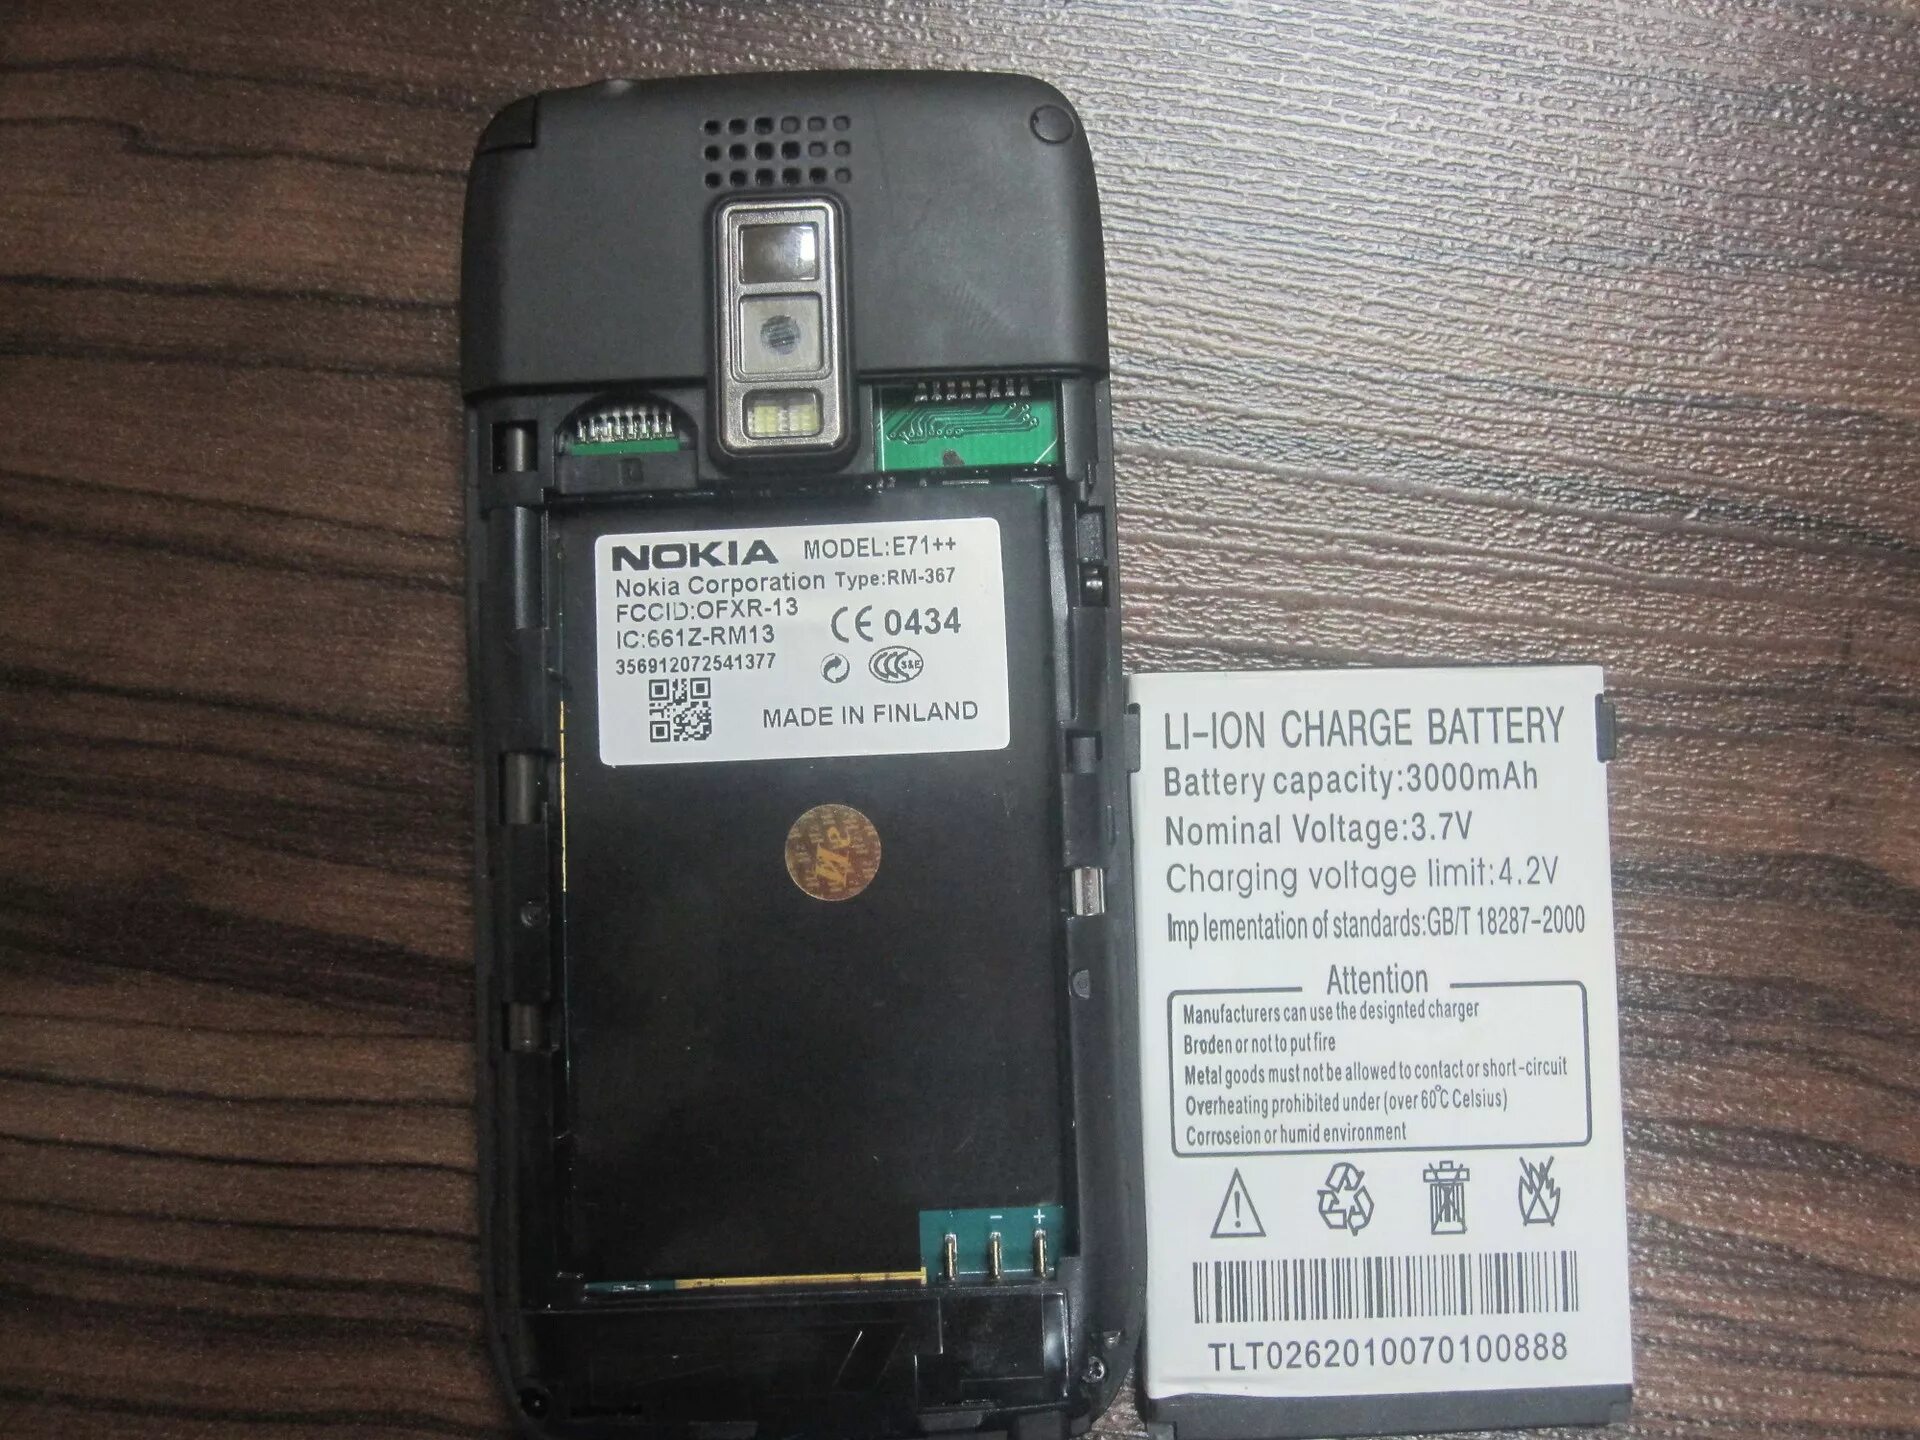 Samsung a71 аккумулятор